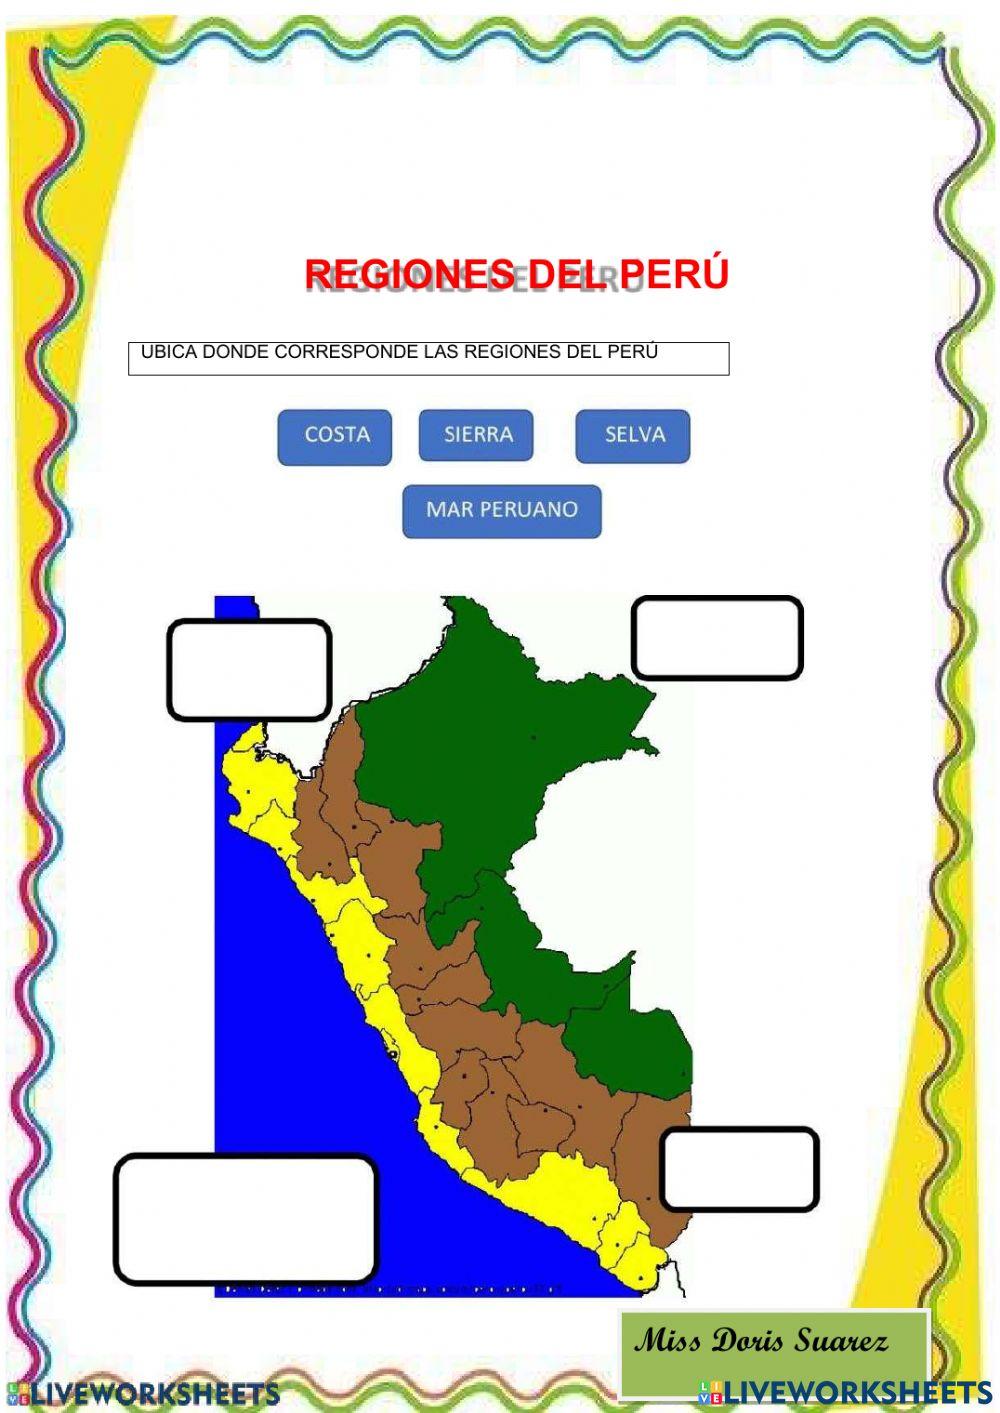 Las regiones del Perú